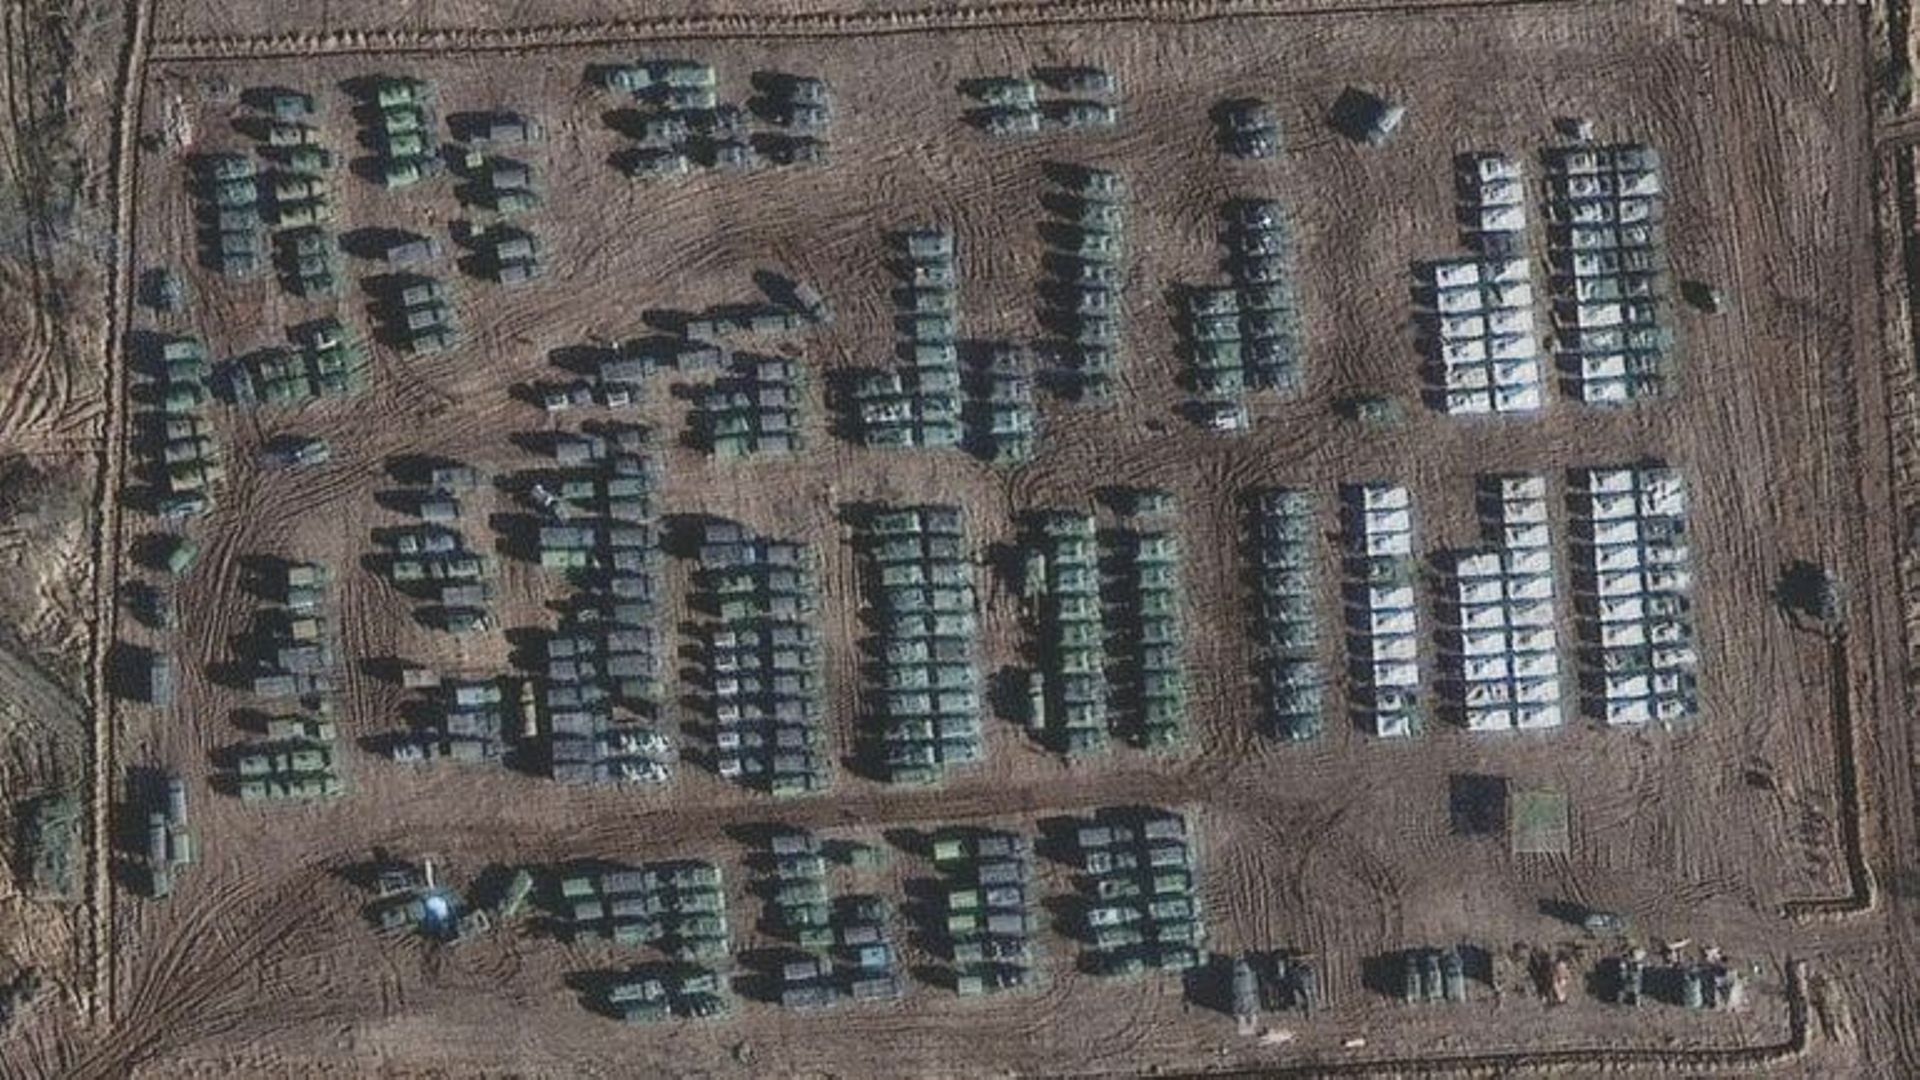 Cette image satellite, publiée par Maxar Technologies et prise le 1er novembre 2021, montre la présence d’un important déploiement de forces terrestres à la limite nord de la ville de Yelnya, en Russie.